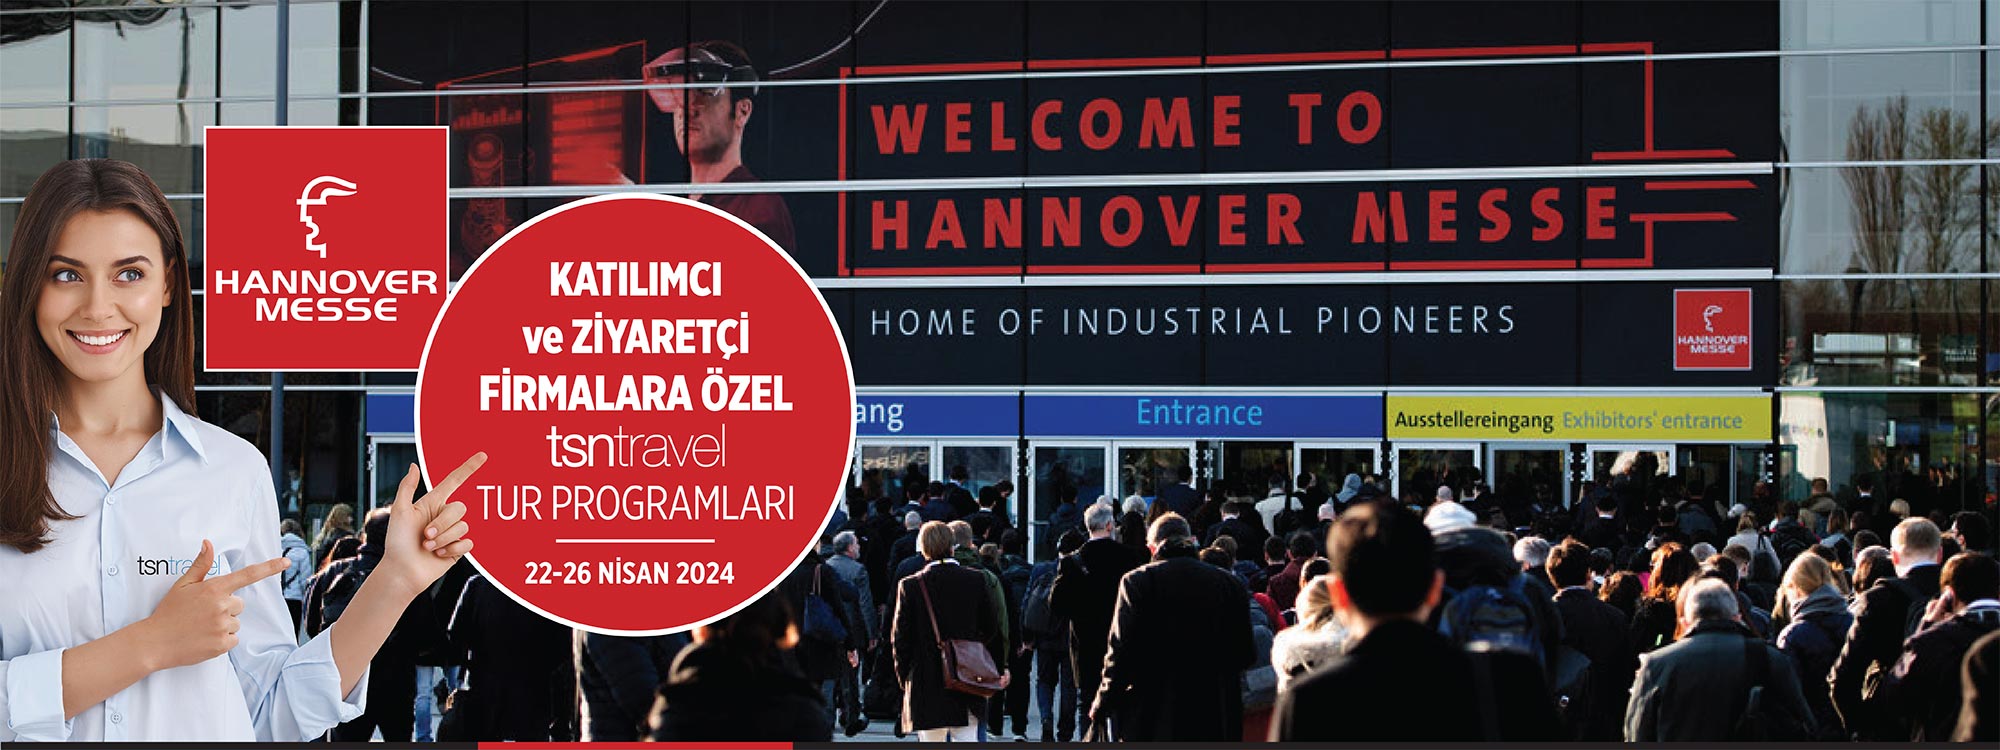 #HM24 | Hannover Messe 2024 Endüstriyel Teknoloji Fuarı | 22-26 Nisan 2024 | Şirketinize özel yurt dışı fuar turları | WhatsApp: (0533) 278 0 876